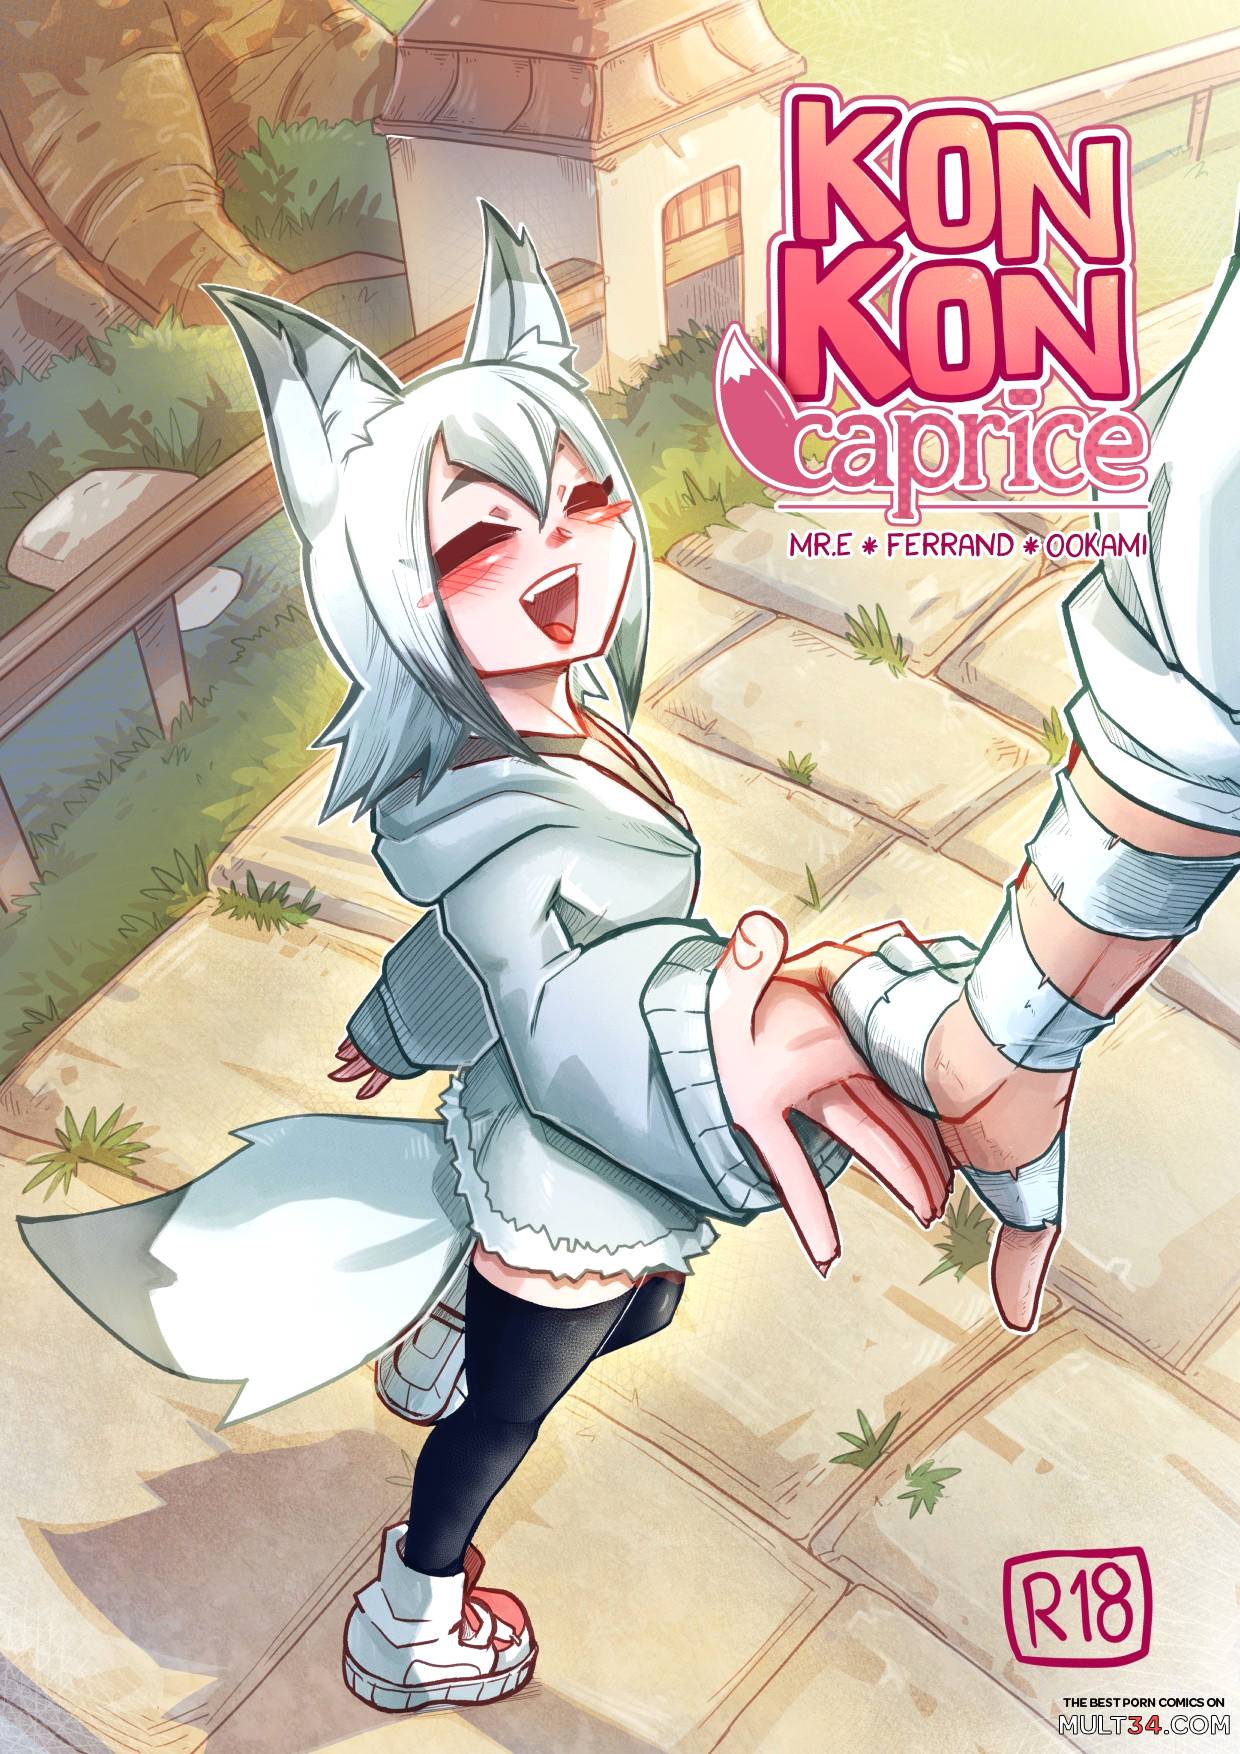 Www Xxx Kon - Kon Kon Caprice porn comic - the best cartoon porn comics, Rule 34 | MULT34